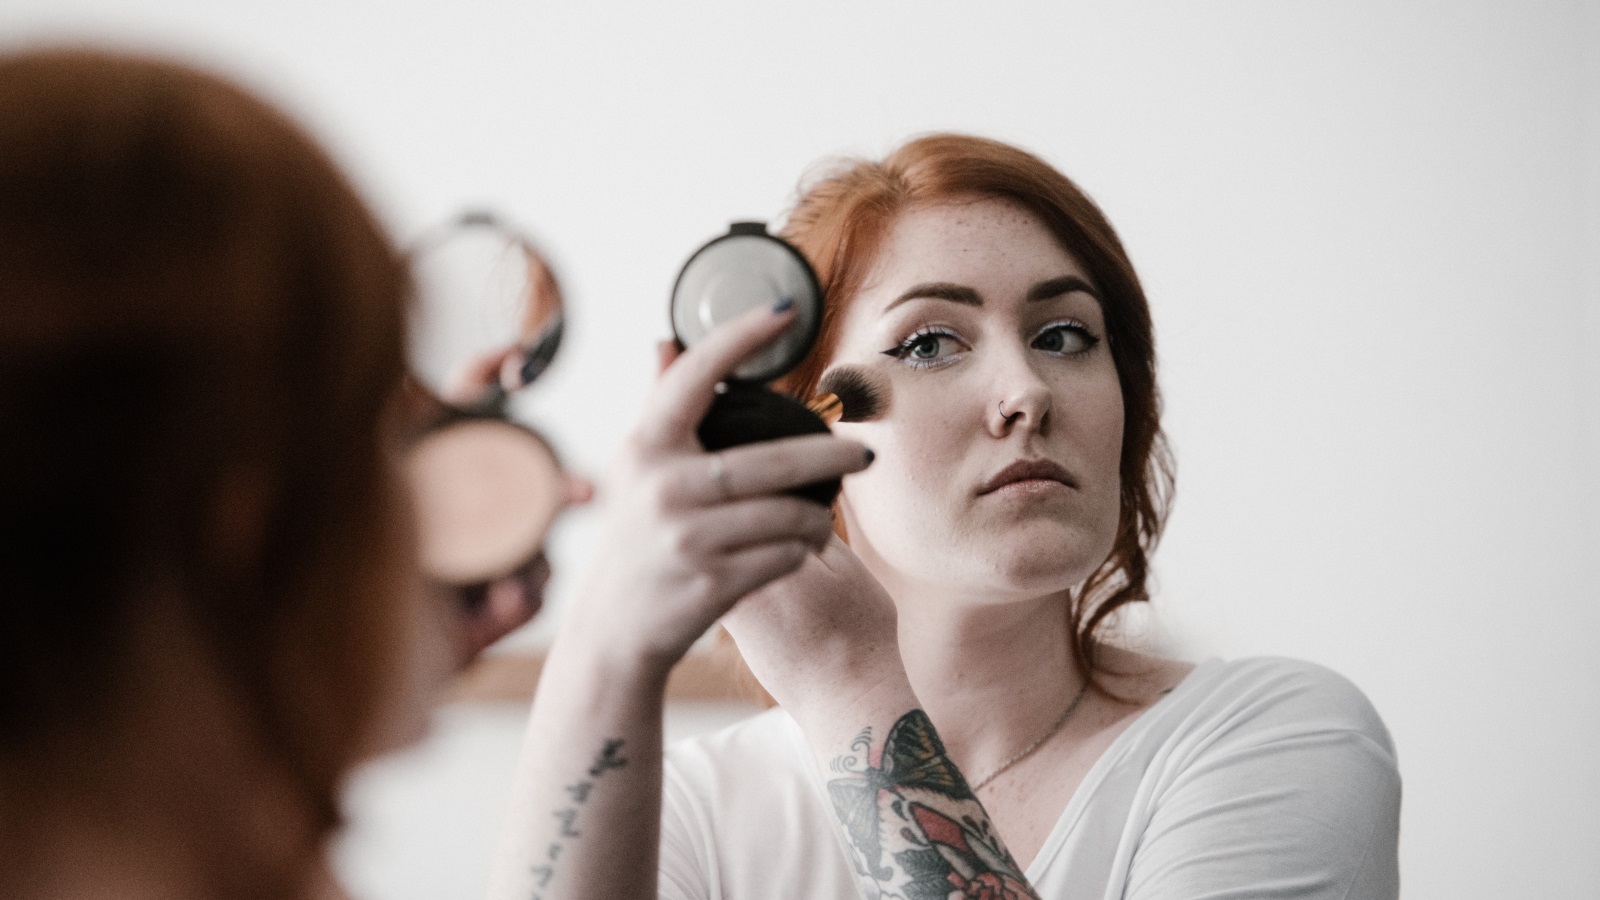 ‪‬ النساء اللواتي يضعن مساحيق التجميل ينظر إليهن على أنهن يحاولن تحسين مظهرهن وأنهن أقل جدارة بالثقة(مواقع التواصل)